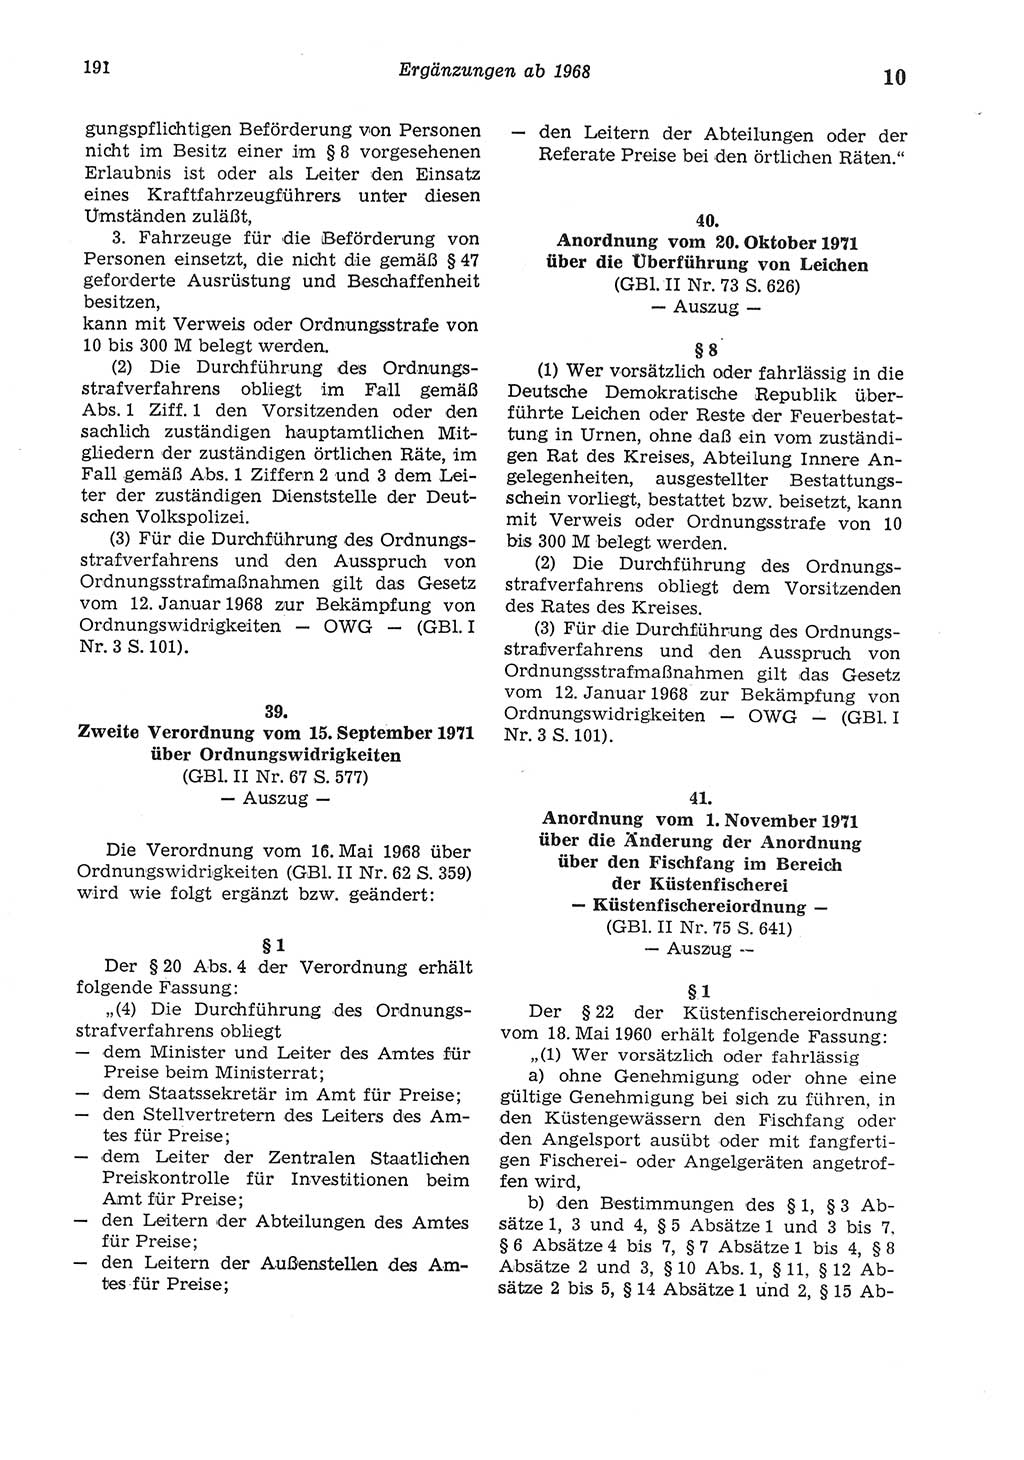 Strafgesetzbuch (StGB) der Deutschen Demokratischen Republik (DDR) und angrenzende Gesetze und Bestimmungen 1975, Seite 191 (StGB DDR Ges. Best. 1975, S. 191)